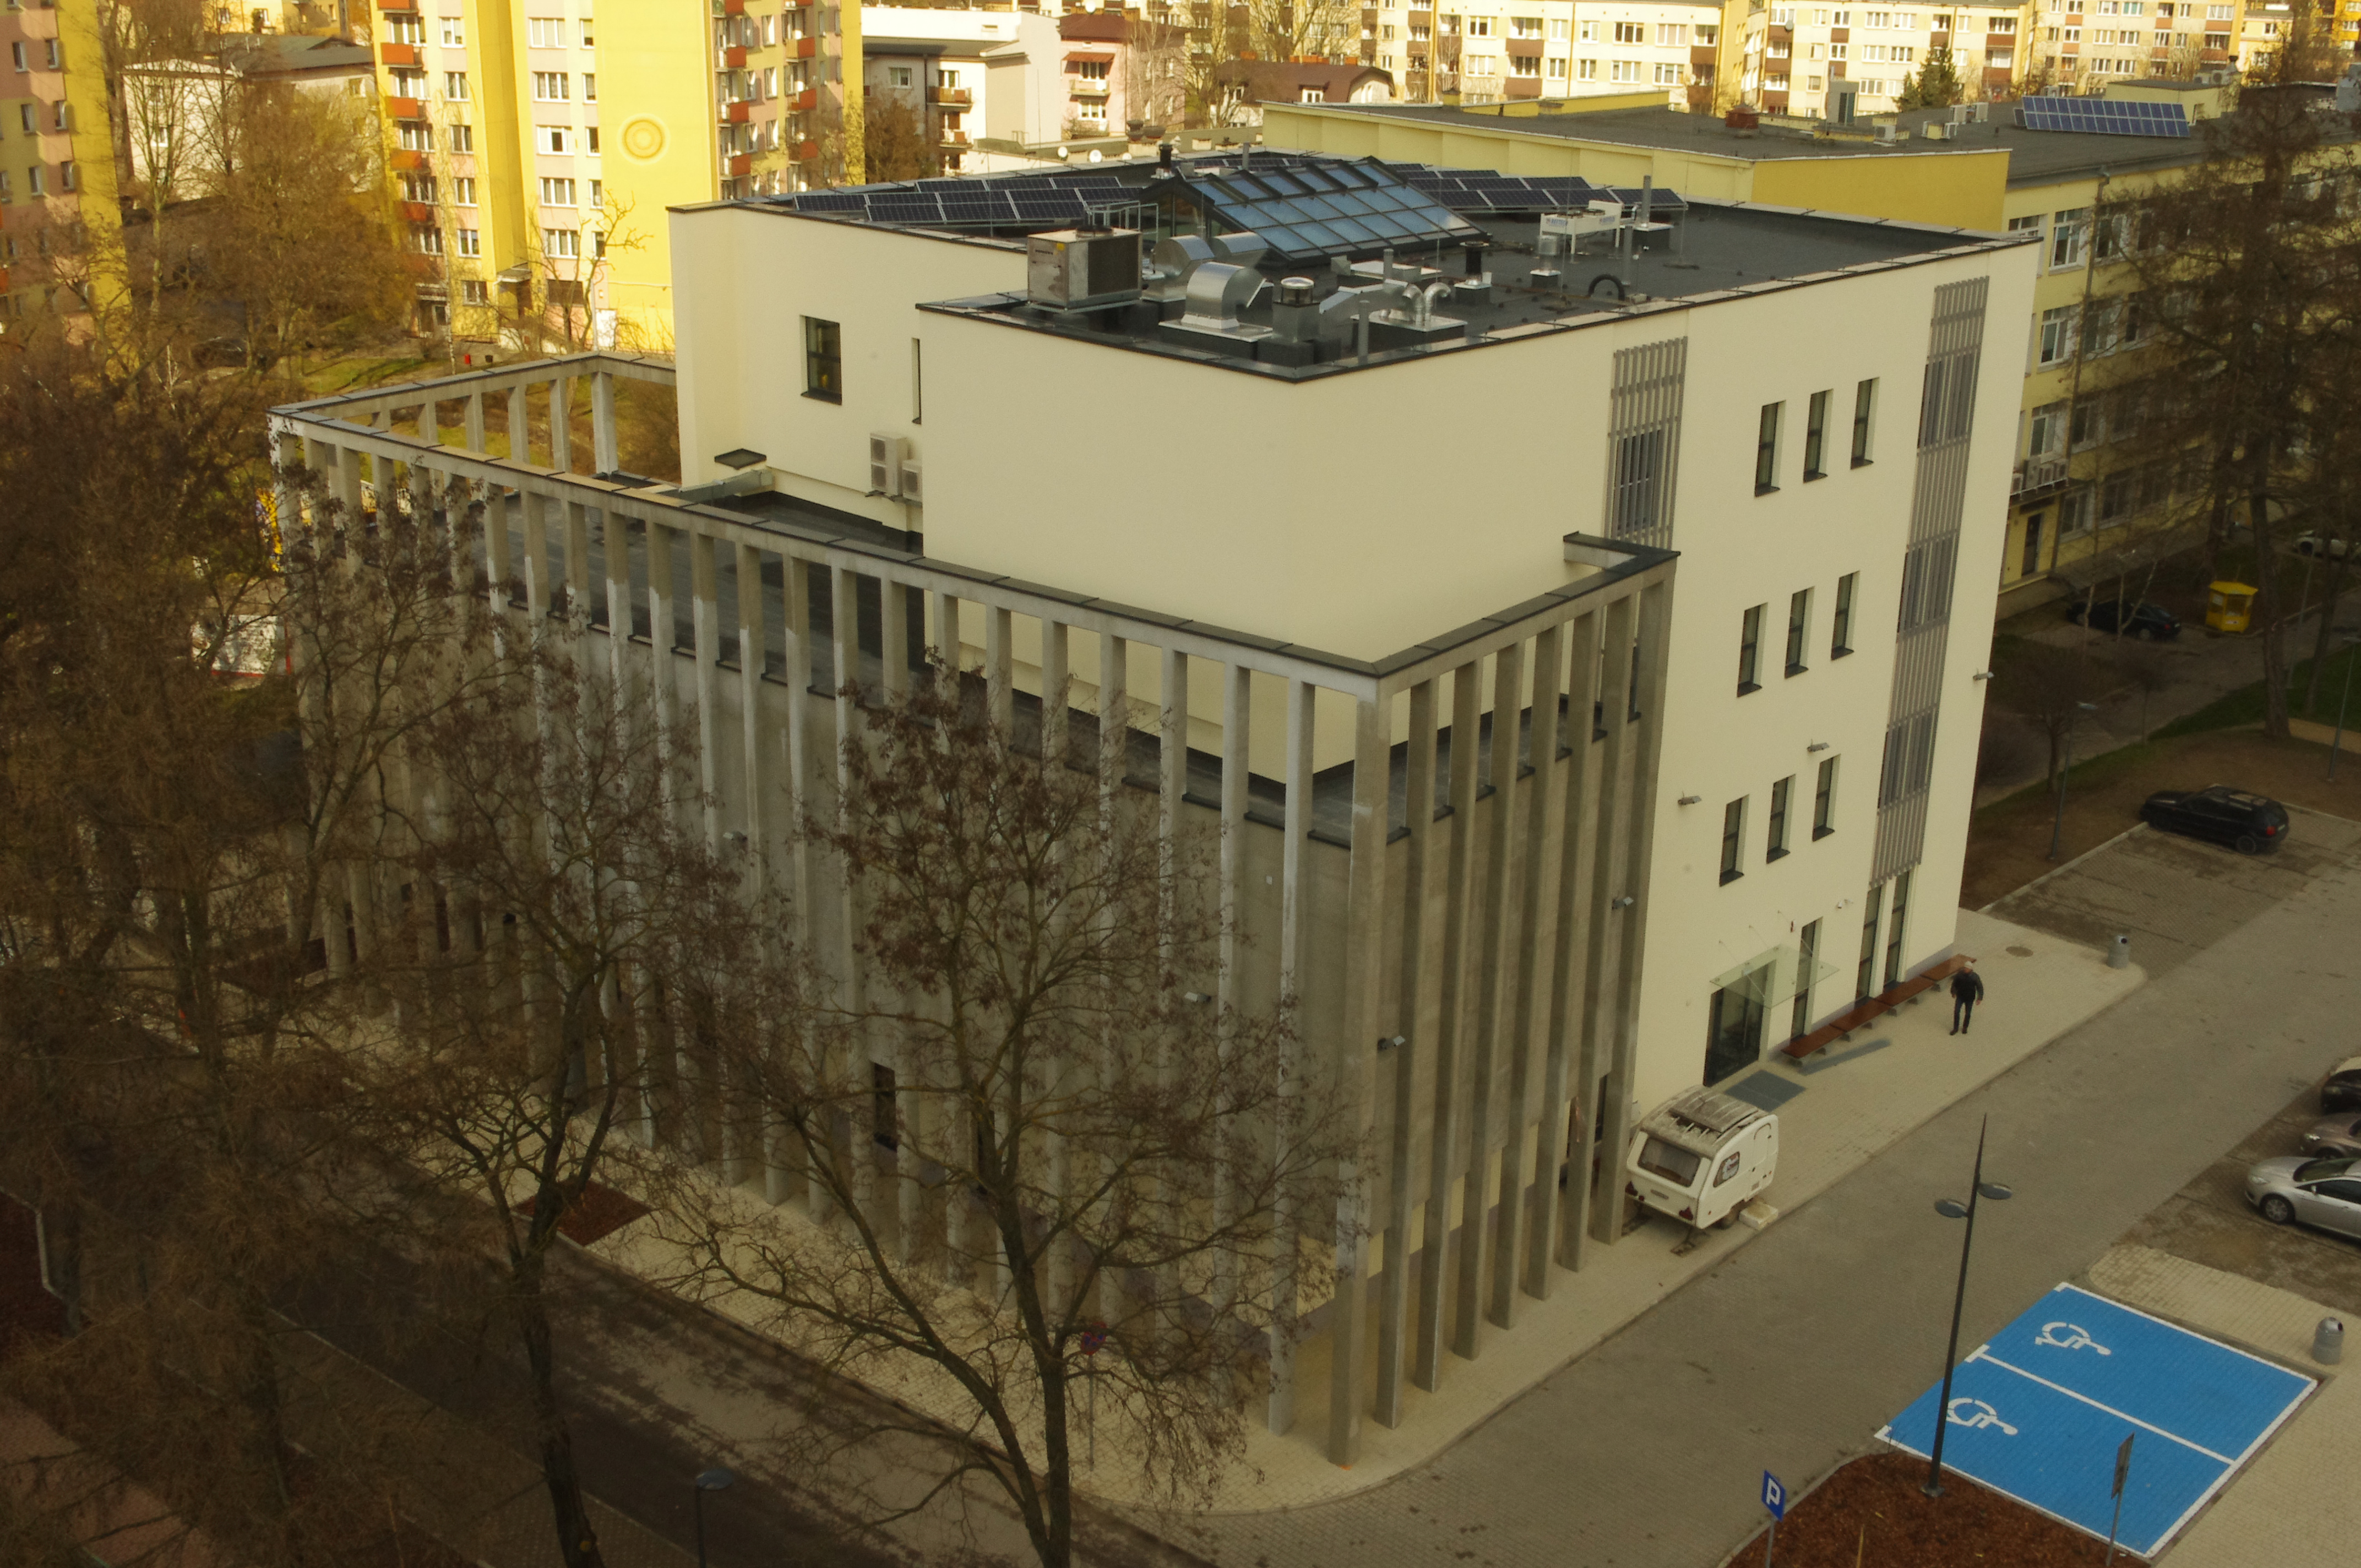 Centrum Technologii Informatycznych dla Politechniki Lubelskiej w Lublinie - Building construction